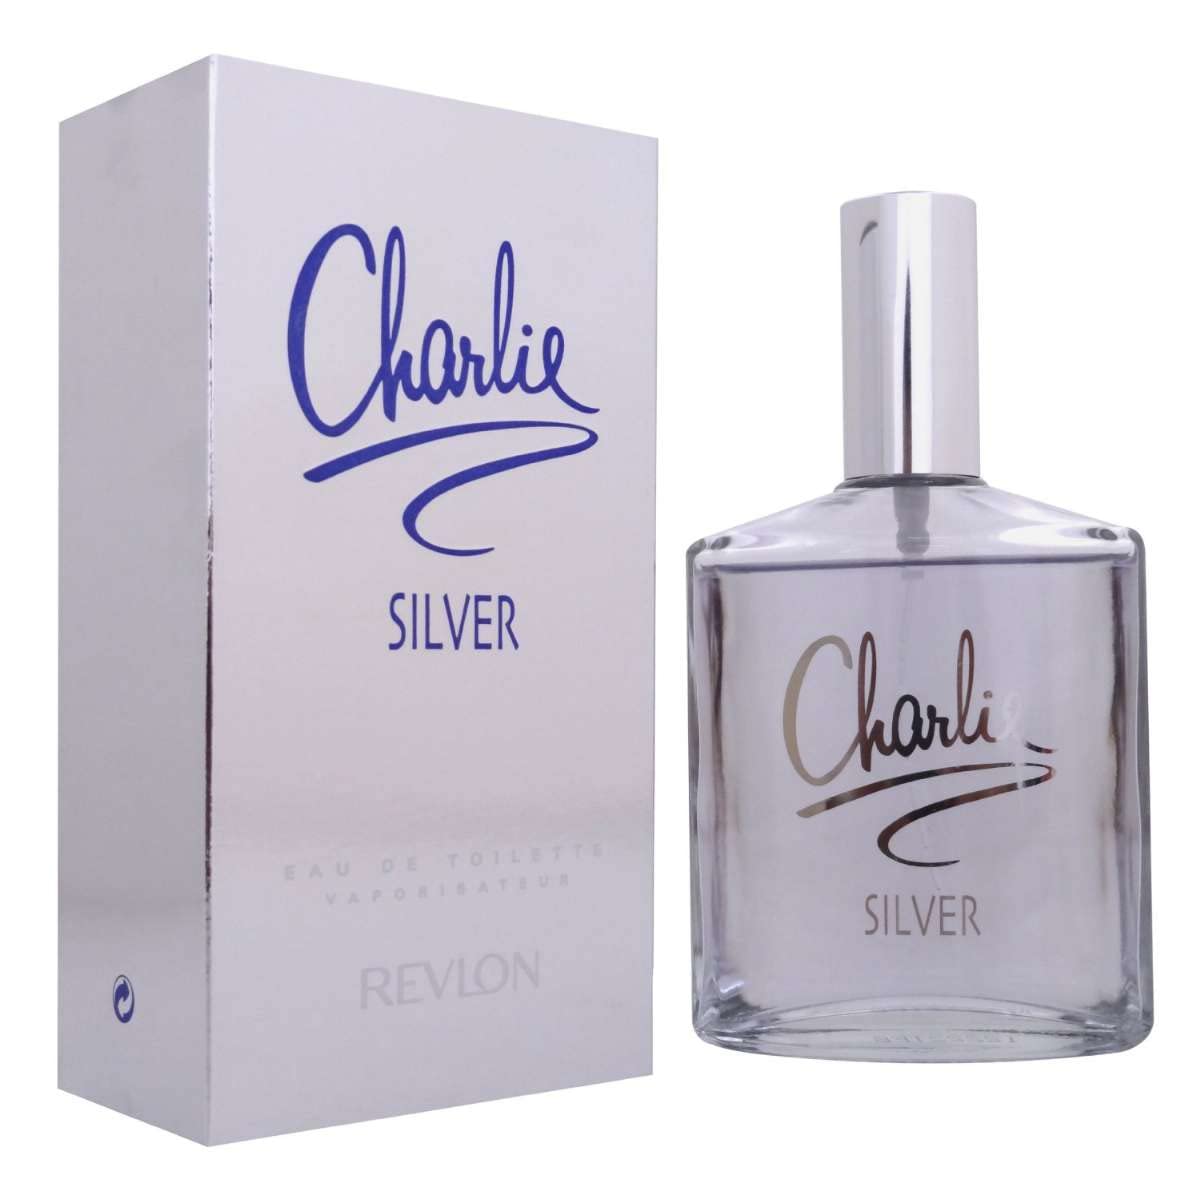 Charlie Silver by Revlon,  3.4 fl oz